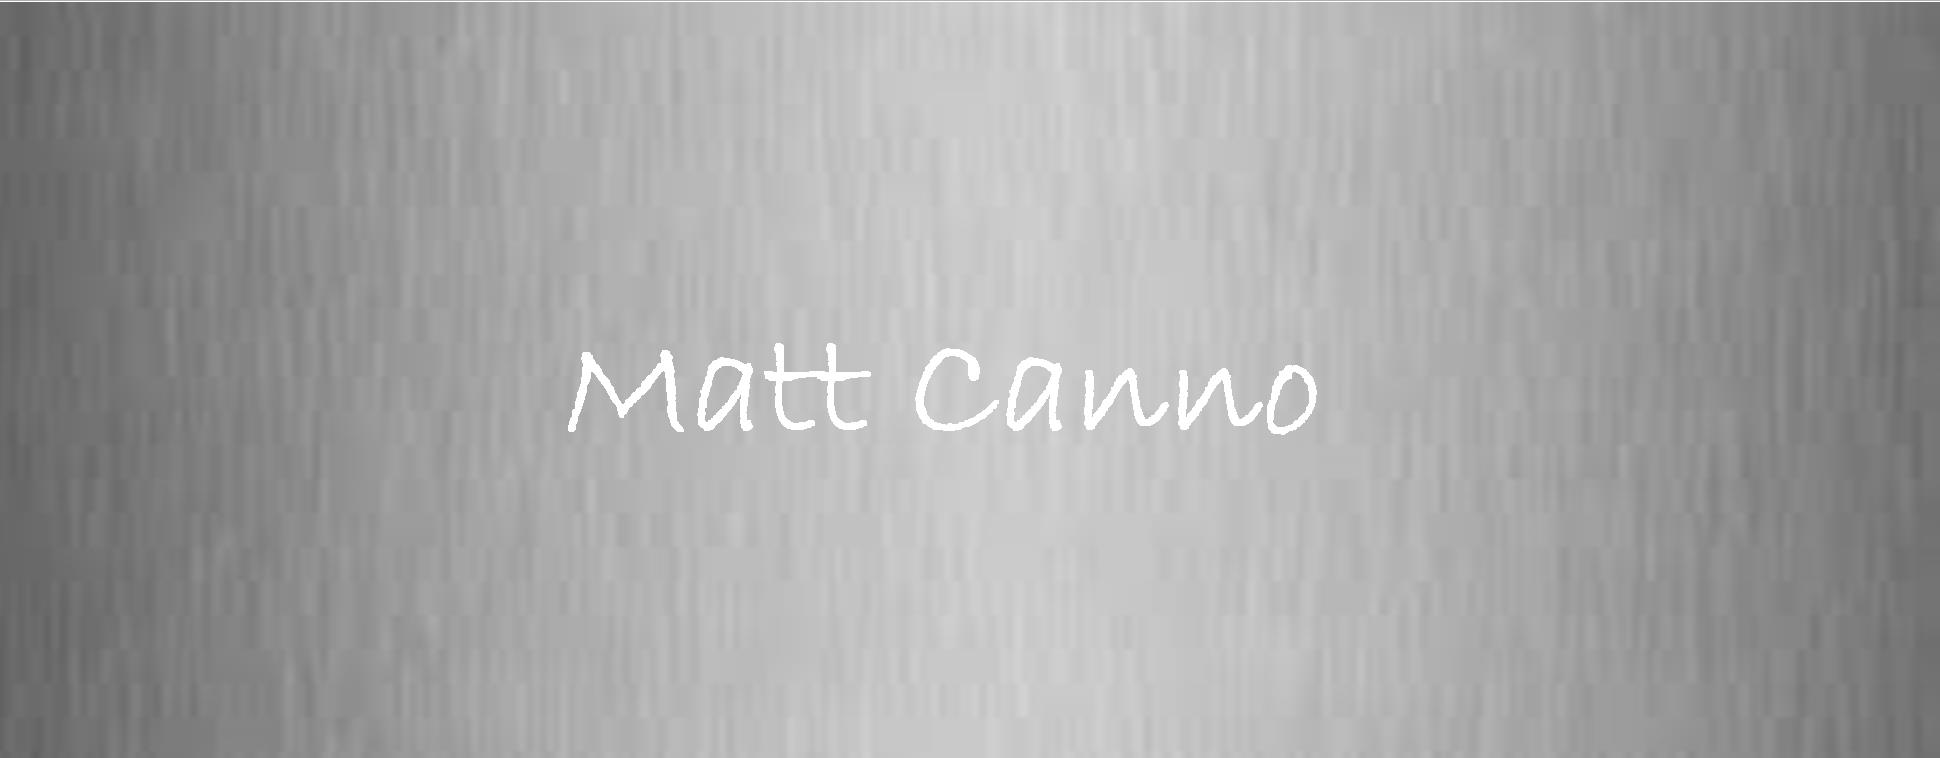 Matt Canno.jpg